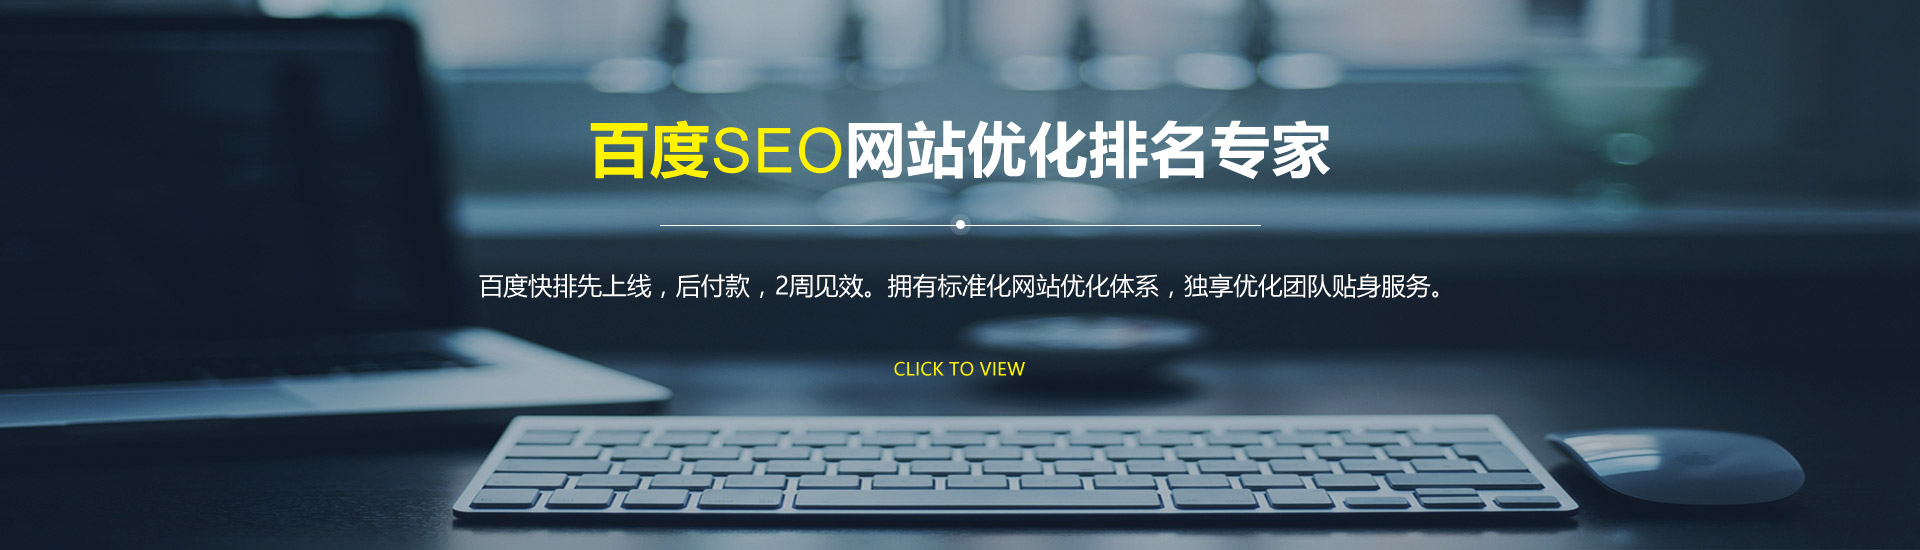 优化网站seo网站系统平台_手机端网站seo优化_移动端网站seo优化